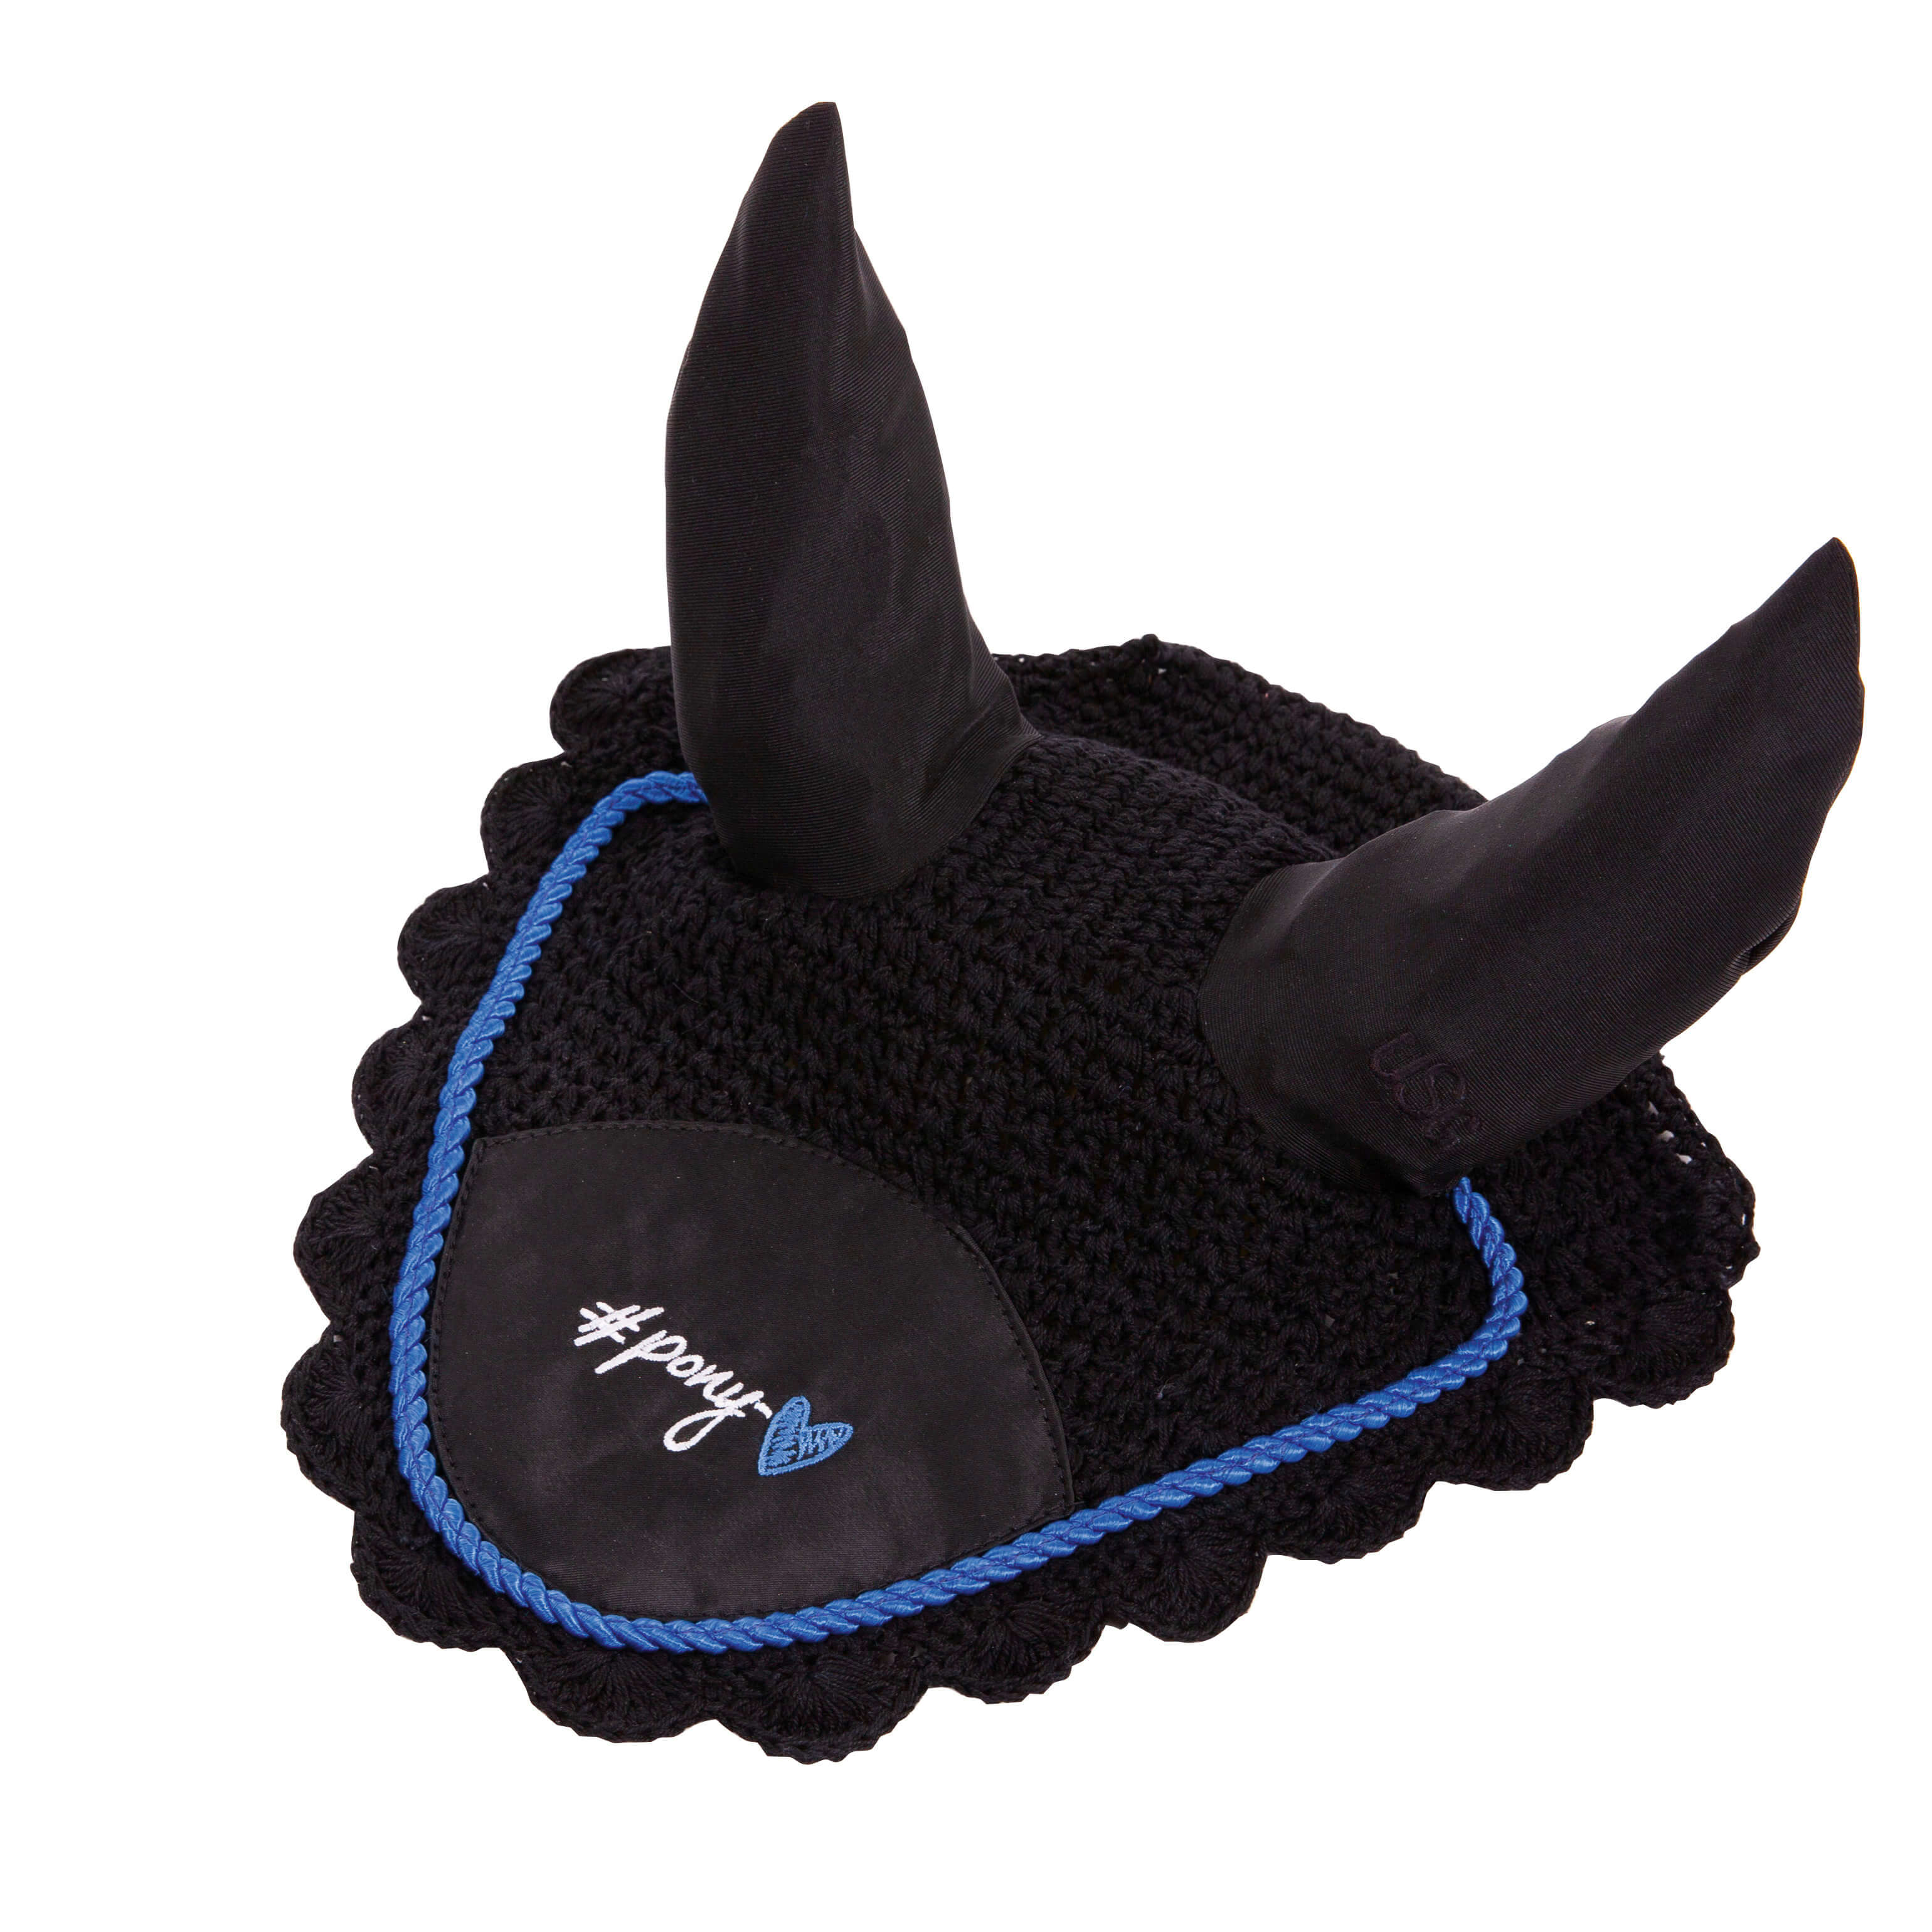 Fliegenhaube Baumwolle mit Stoffeinsatz vorne mittig mit elastischem Ohrenschutz mit einer Kordel und "ponylove" Logo